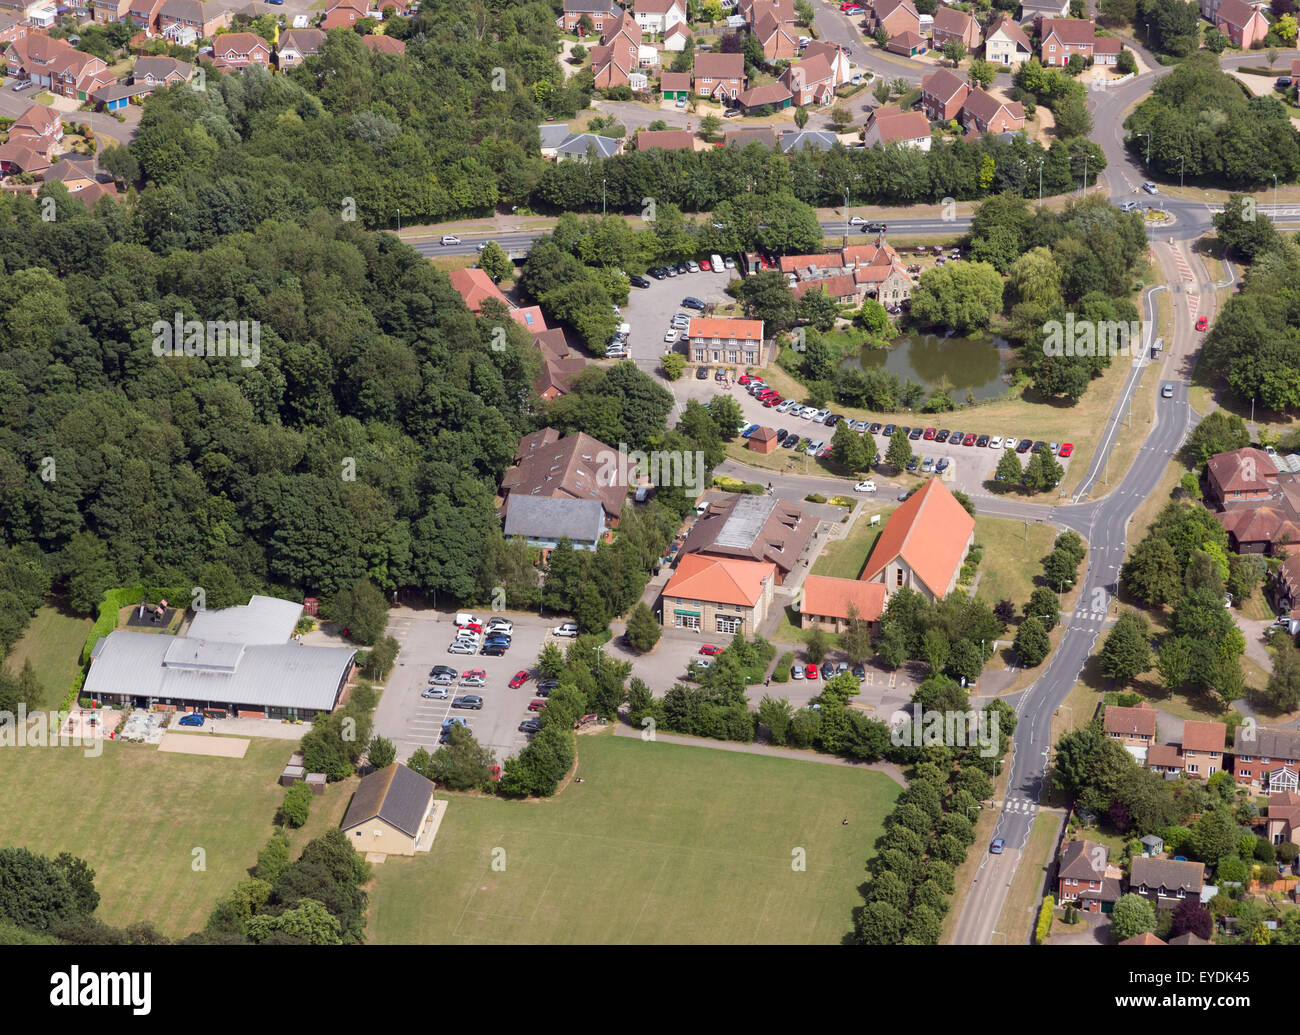 Moreton Hall Community Center, Kirche, Kneipe und lokalen Shops in Bury St. Edmunds, Suffolk, Großbritannien Stockfoto